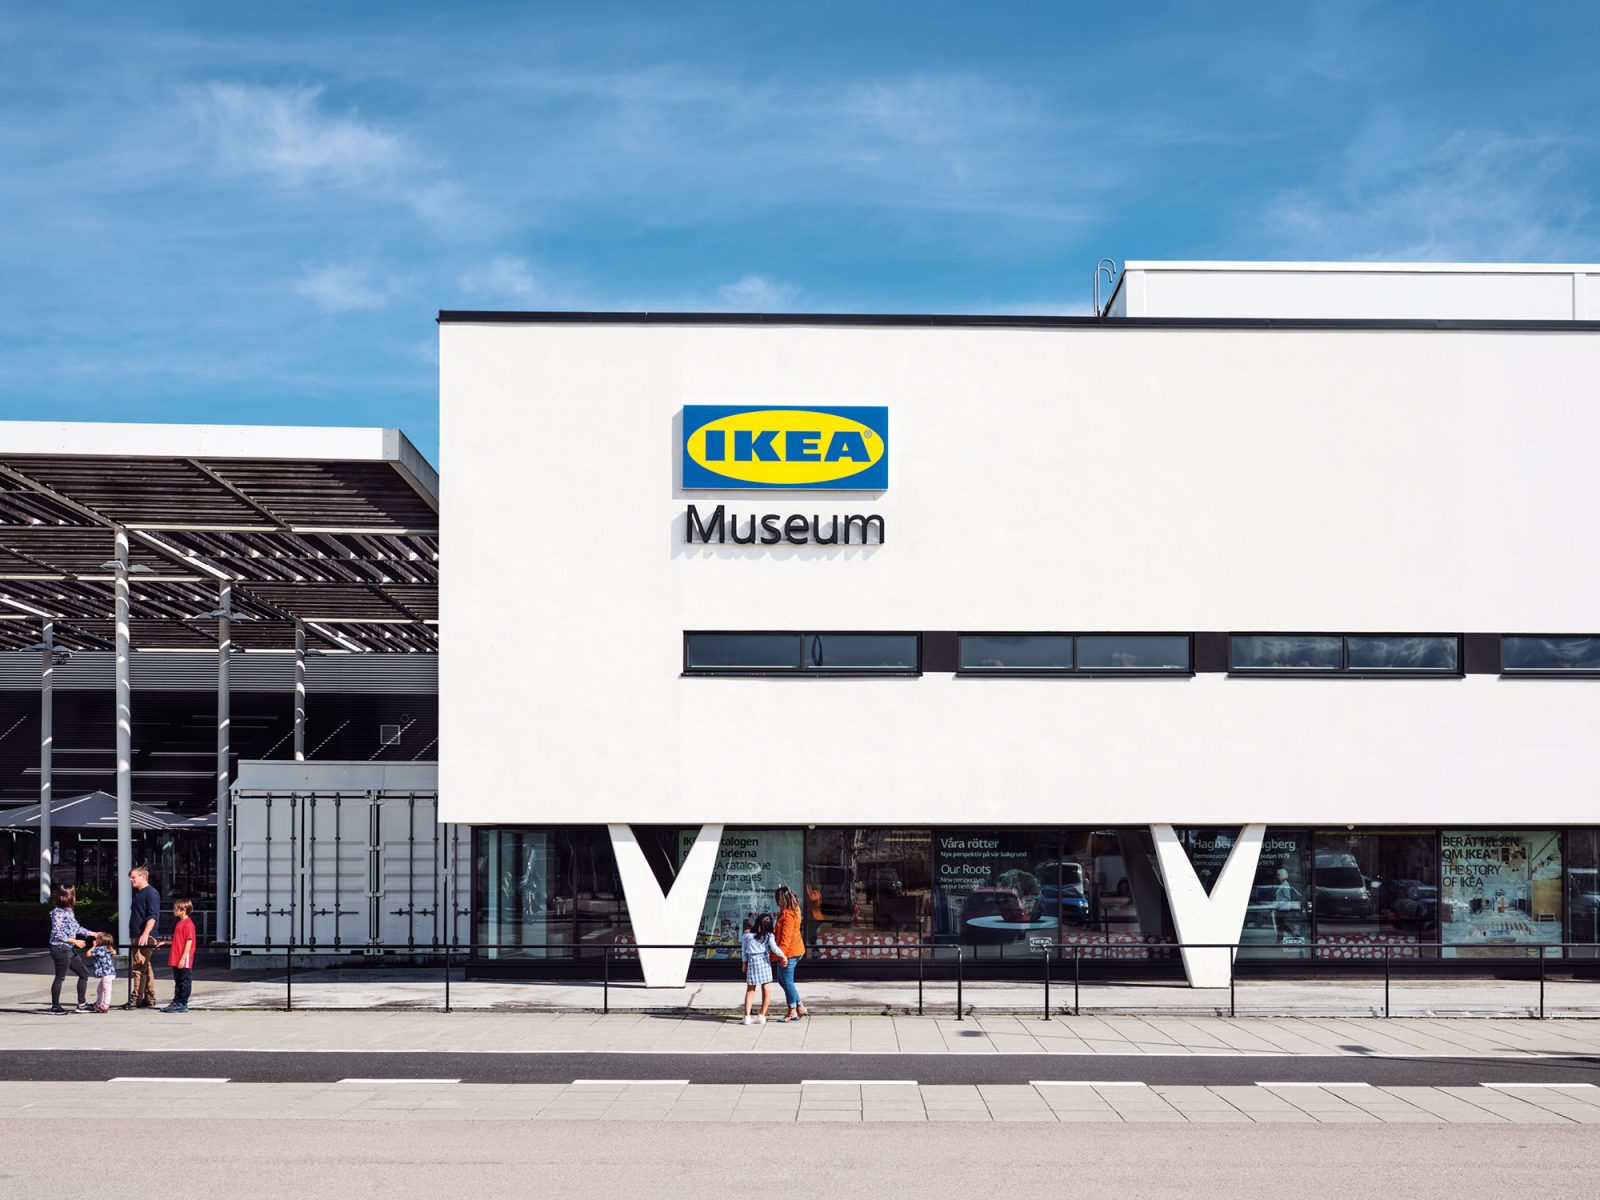 Personnes devant un bâtiment blanc aux lignes épurées, piliers en V, enseigne IKEA Museum sur la façade.